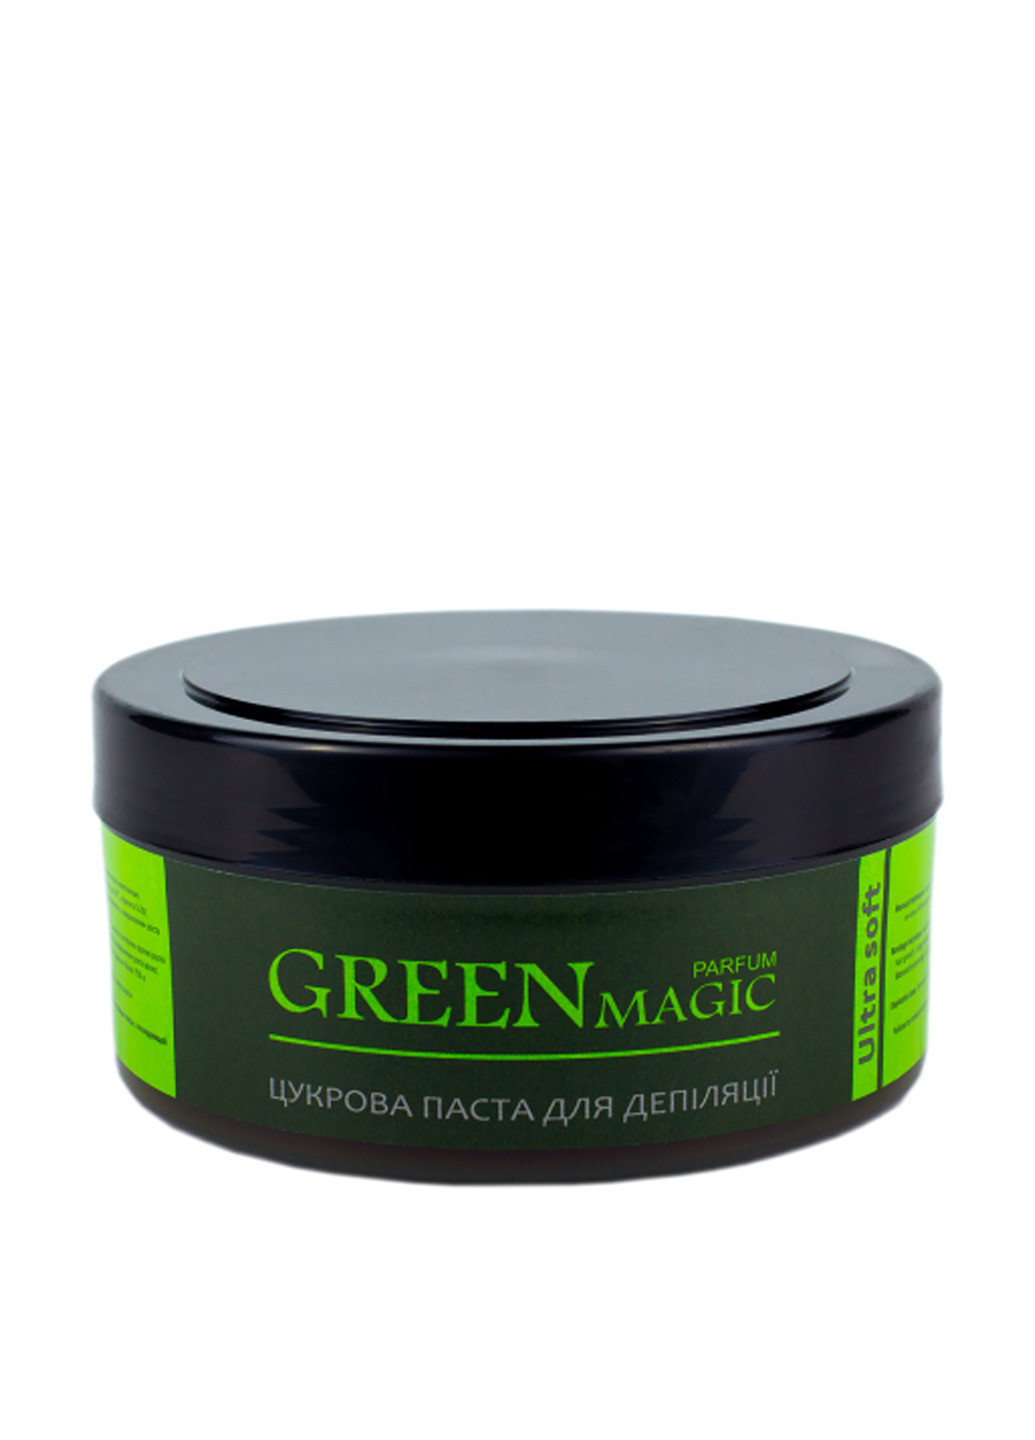 Паста парфюмированная цукрова для депіляції Ультра м'яка Green Magic, 400 г Silk & Soft (89126807)